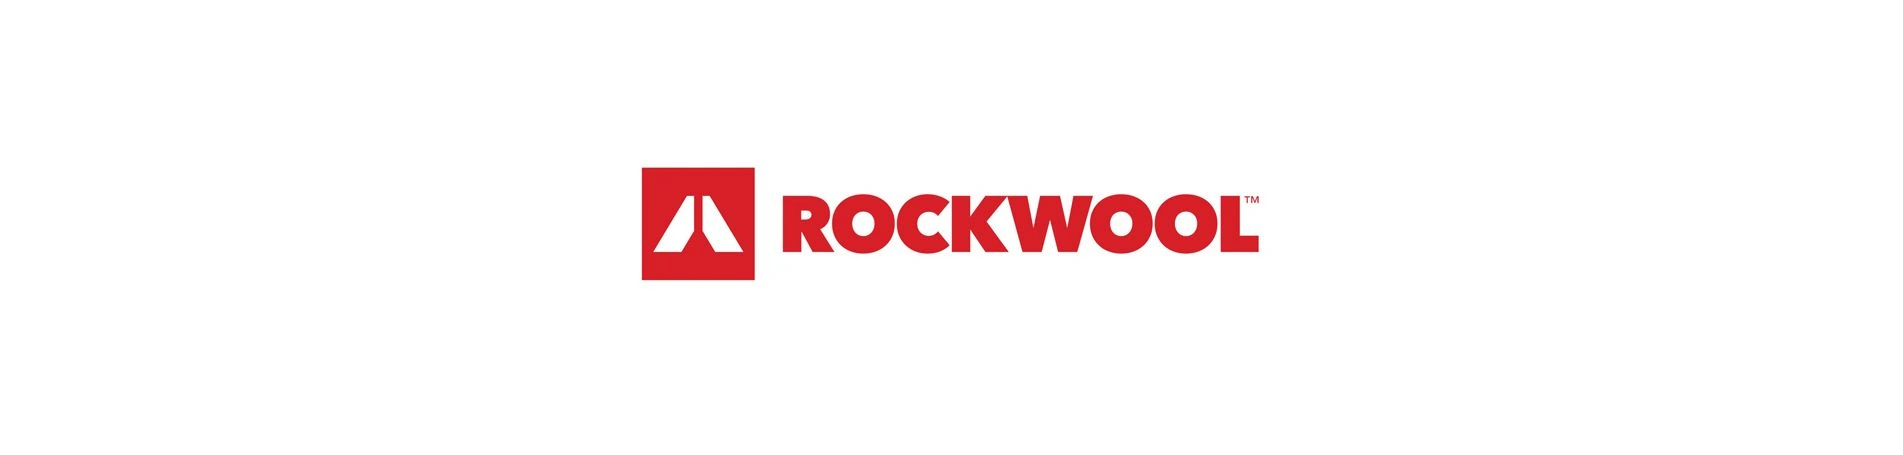 Rockwool Group, nuevo cliente de posicionamiento SEO, optimización SEM y Social Media